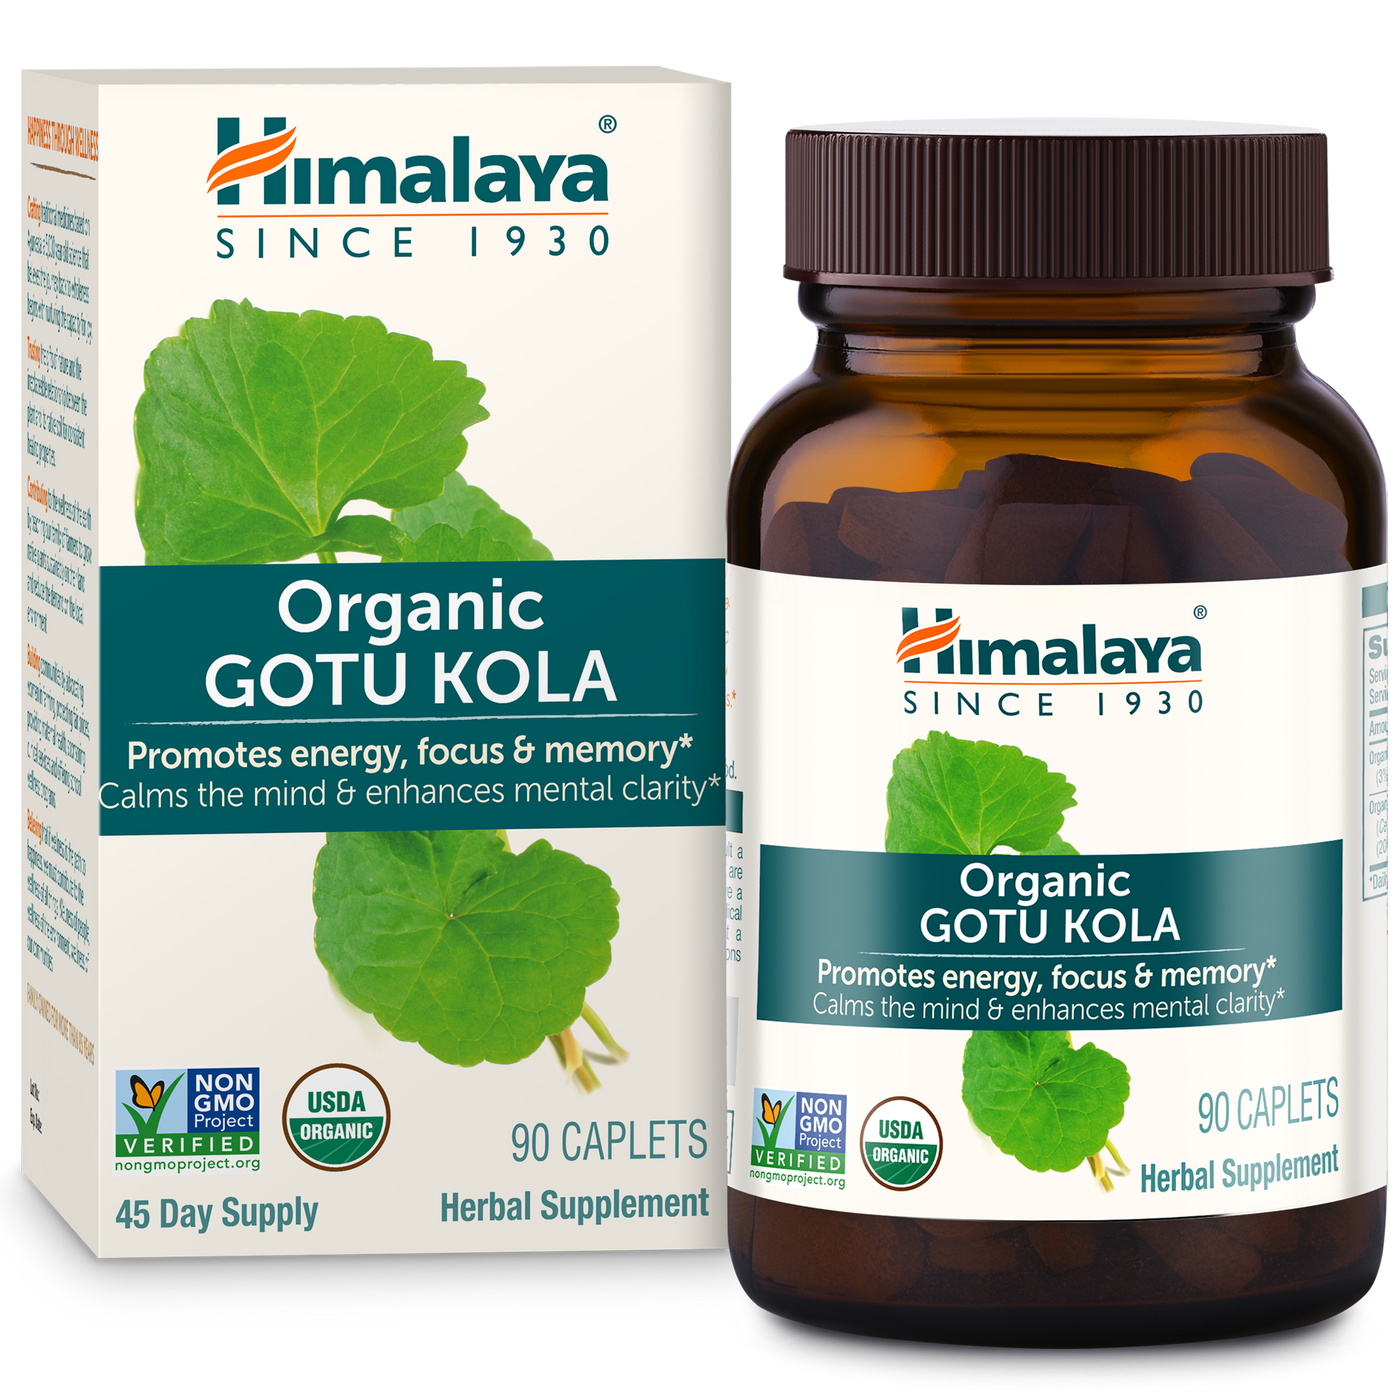 Gotu Kola s Curated Wellness